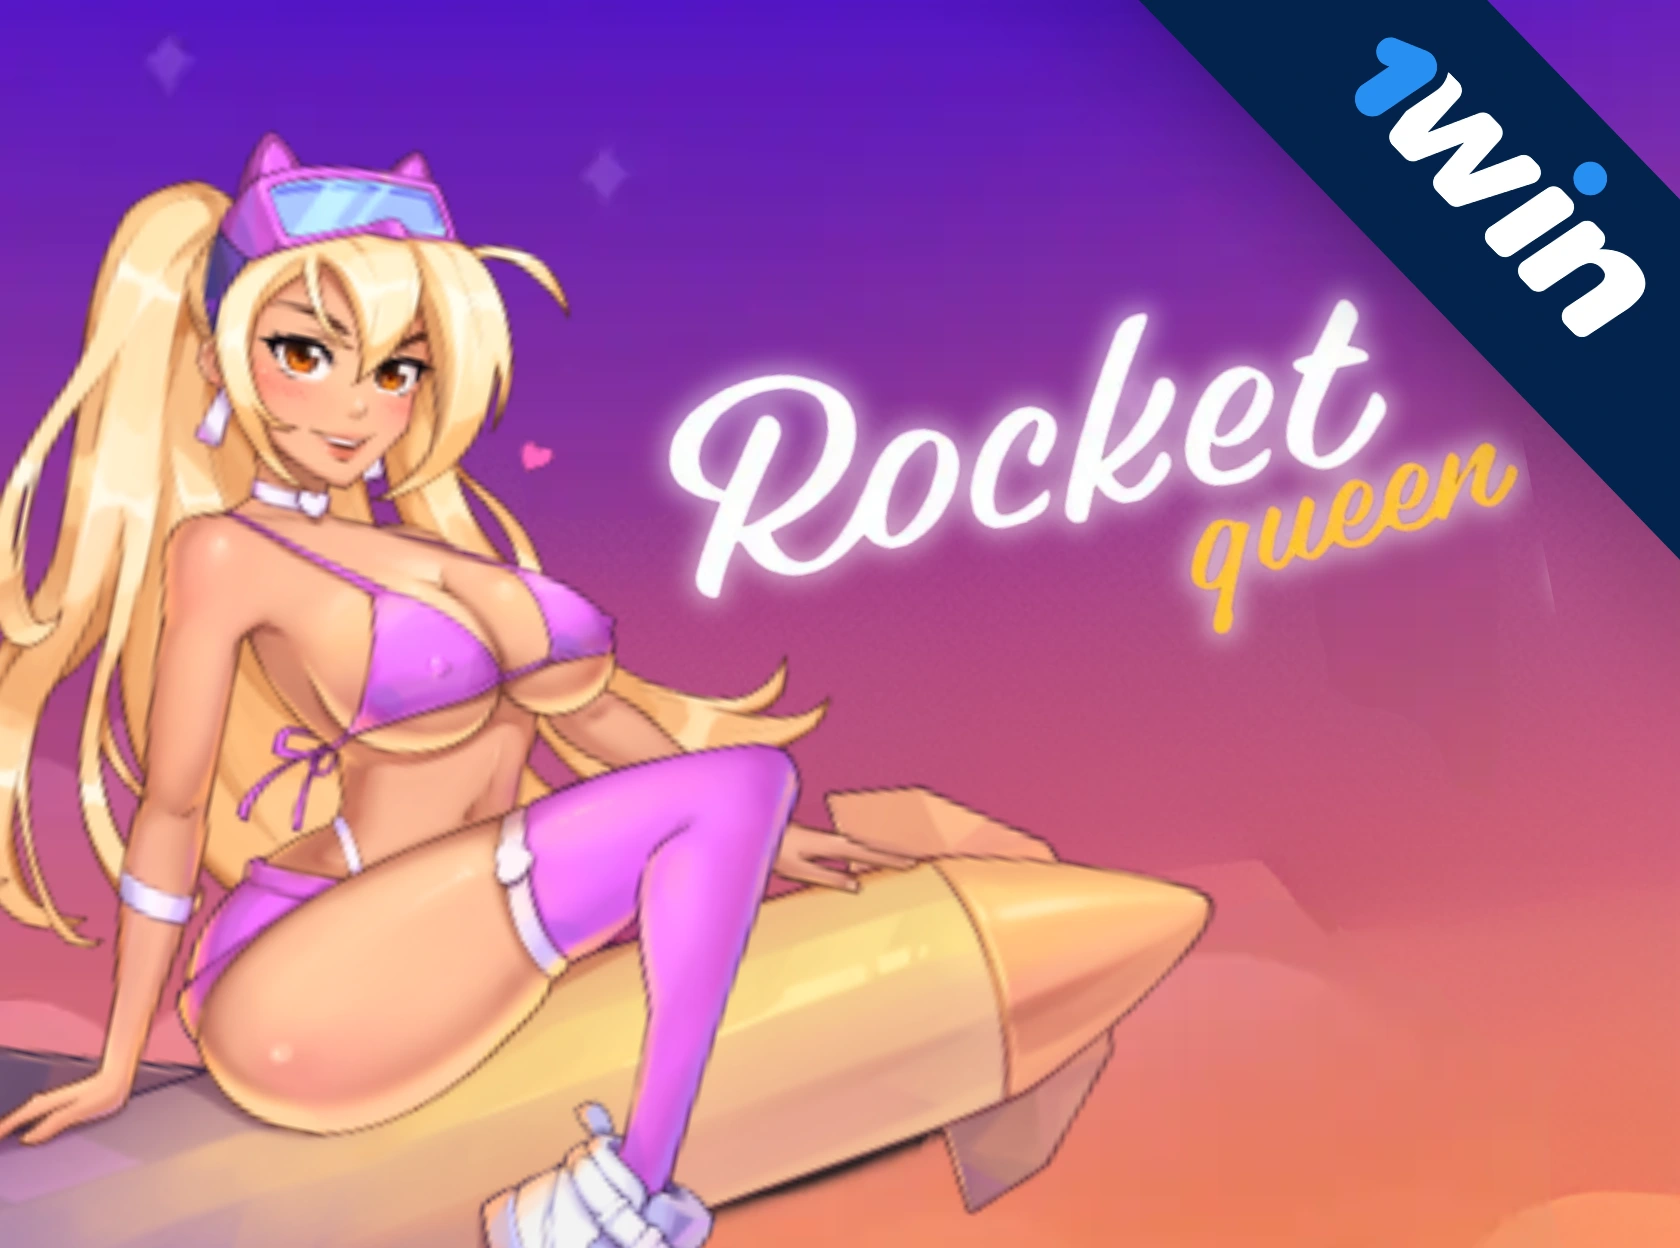 Rocket Queen 1win - pul üçün oyun onlayn oynamaq